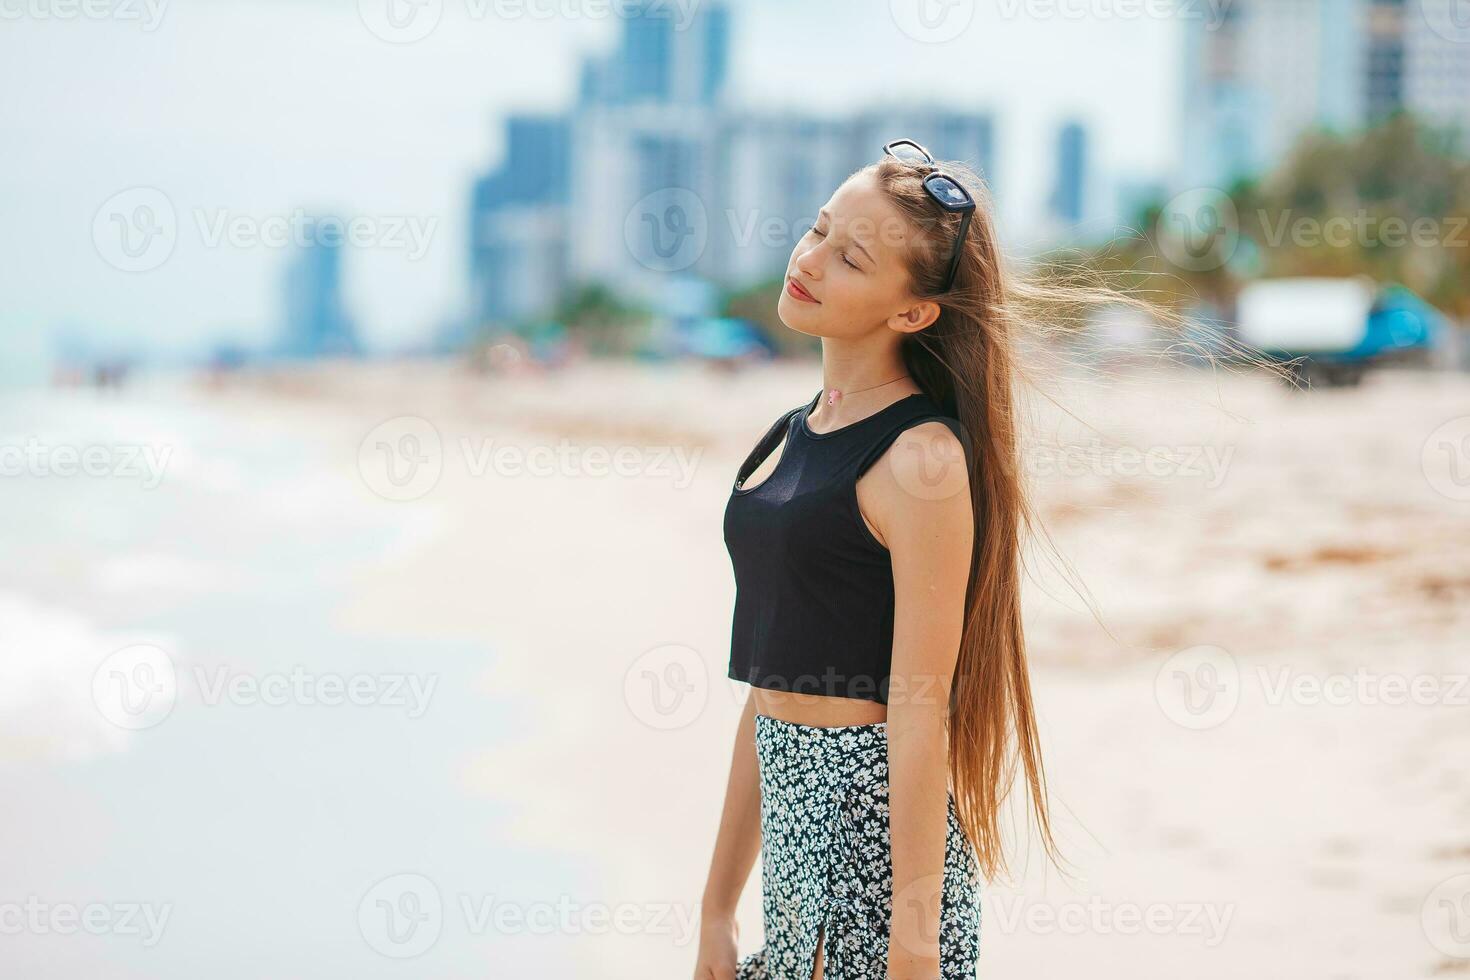 contento giovane ragazza godere tropicale spiaggia vacanza foto